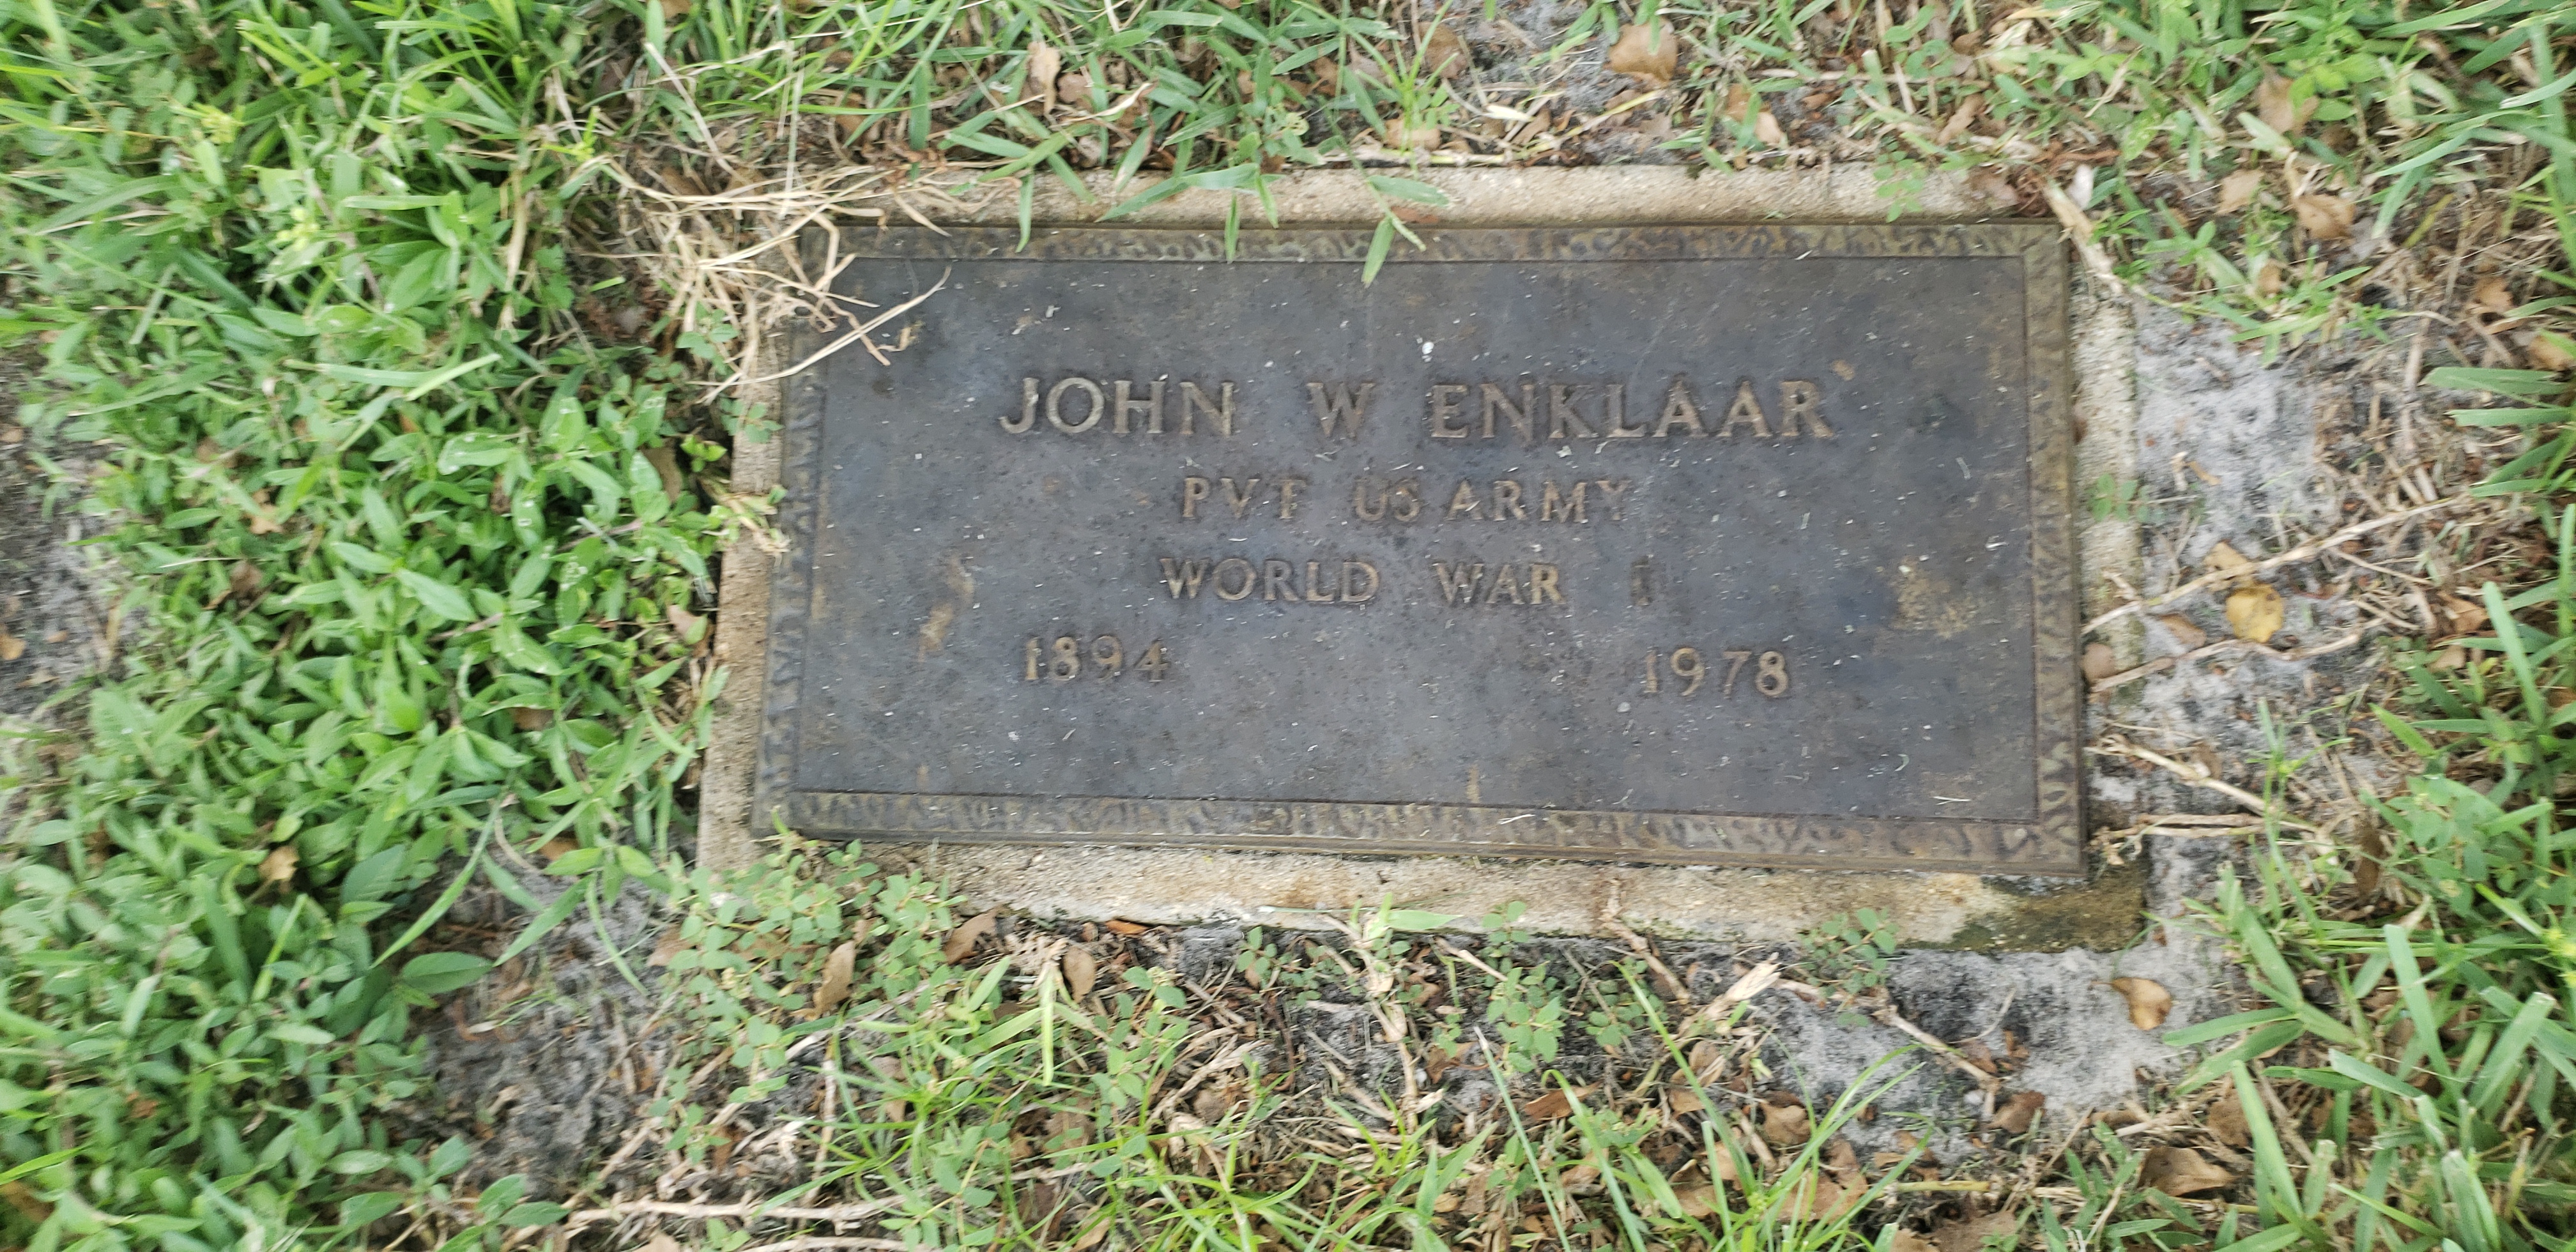 John W Enklaar